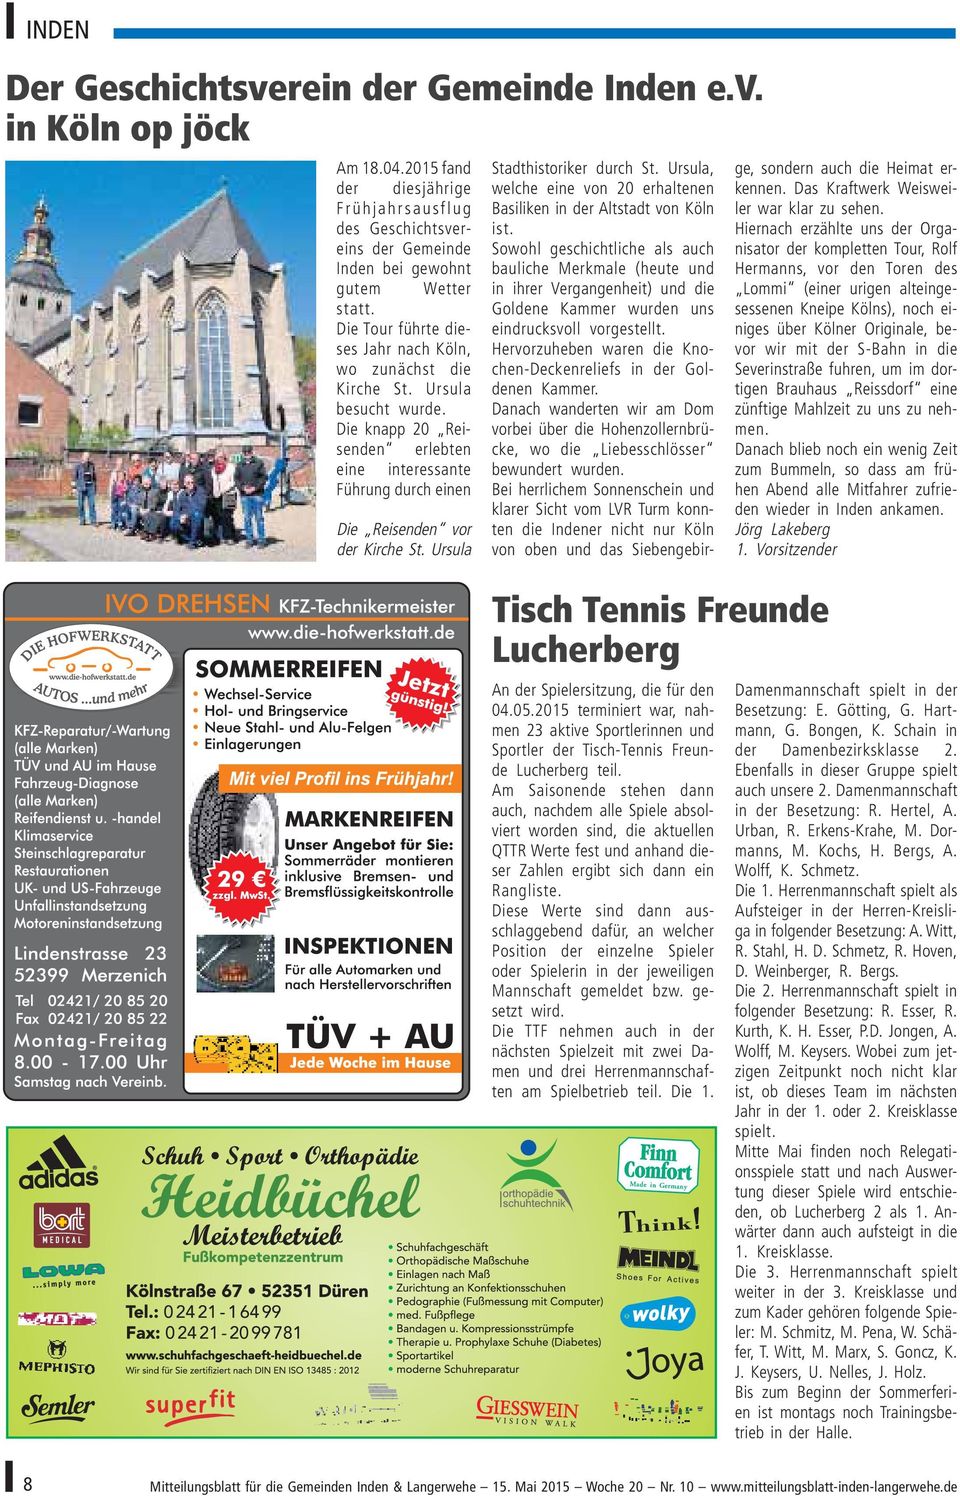 Ursula Tisch Tennis Freunde Lucherberg An der Spielersitzung, die für den 04.05.2015 terminiert war, nahmen 23 aktive Sportlerinnen und Sportler der Tisch-Tennis Freunde Lucherberg teil.